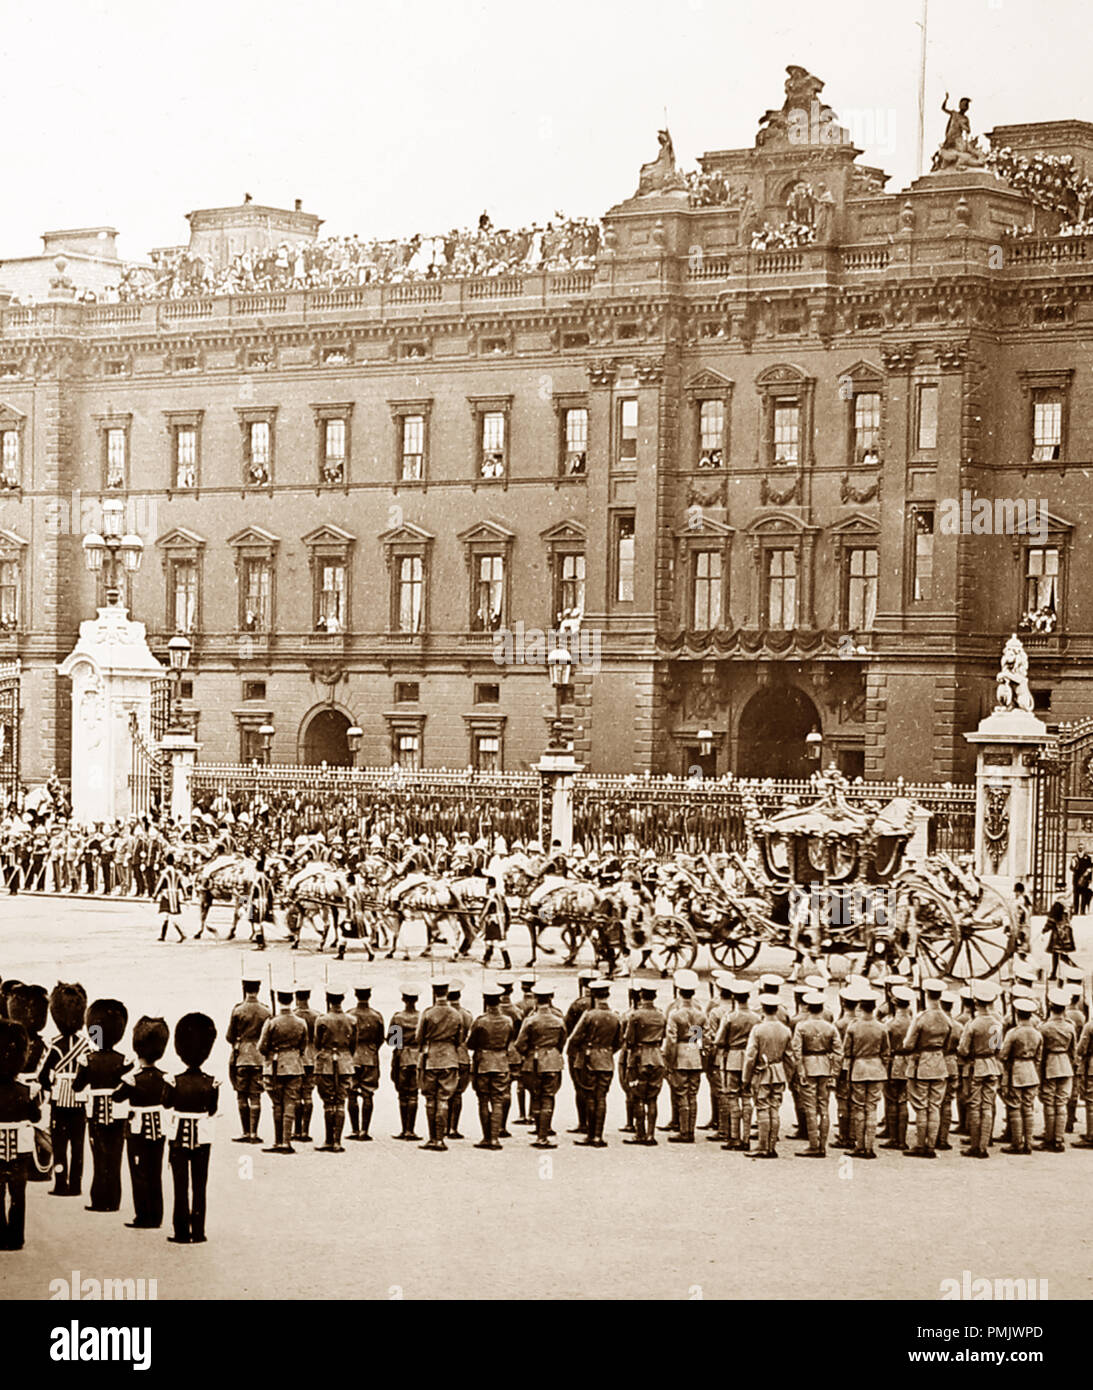 Le Roi de quitter le palais de Buckingham pour l'ouverture du Parlement, début des années 1900 Banque D'Images